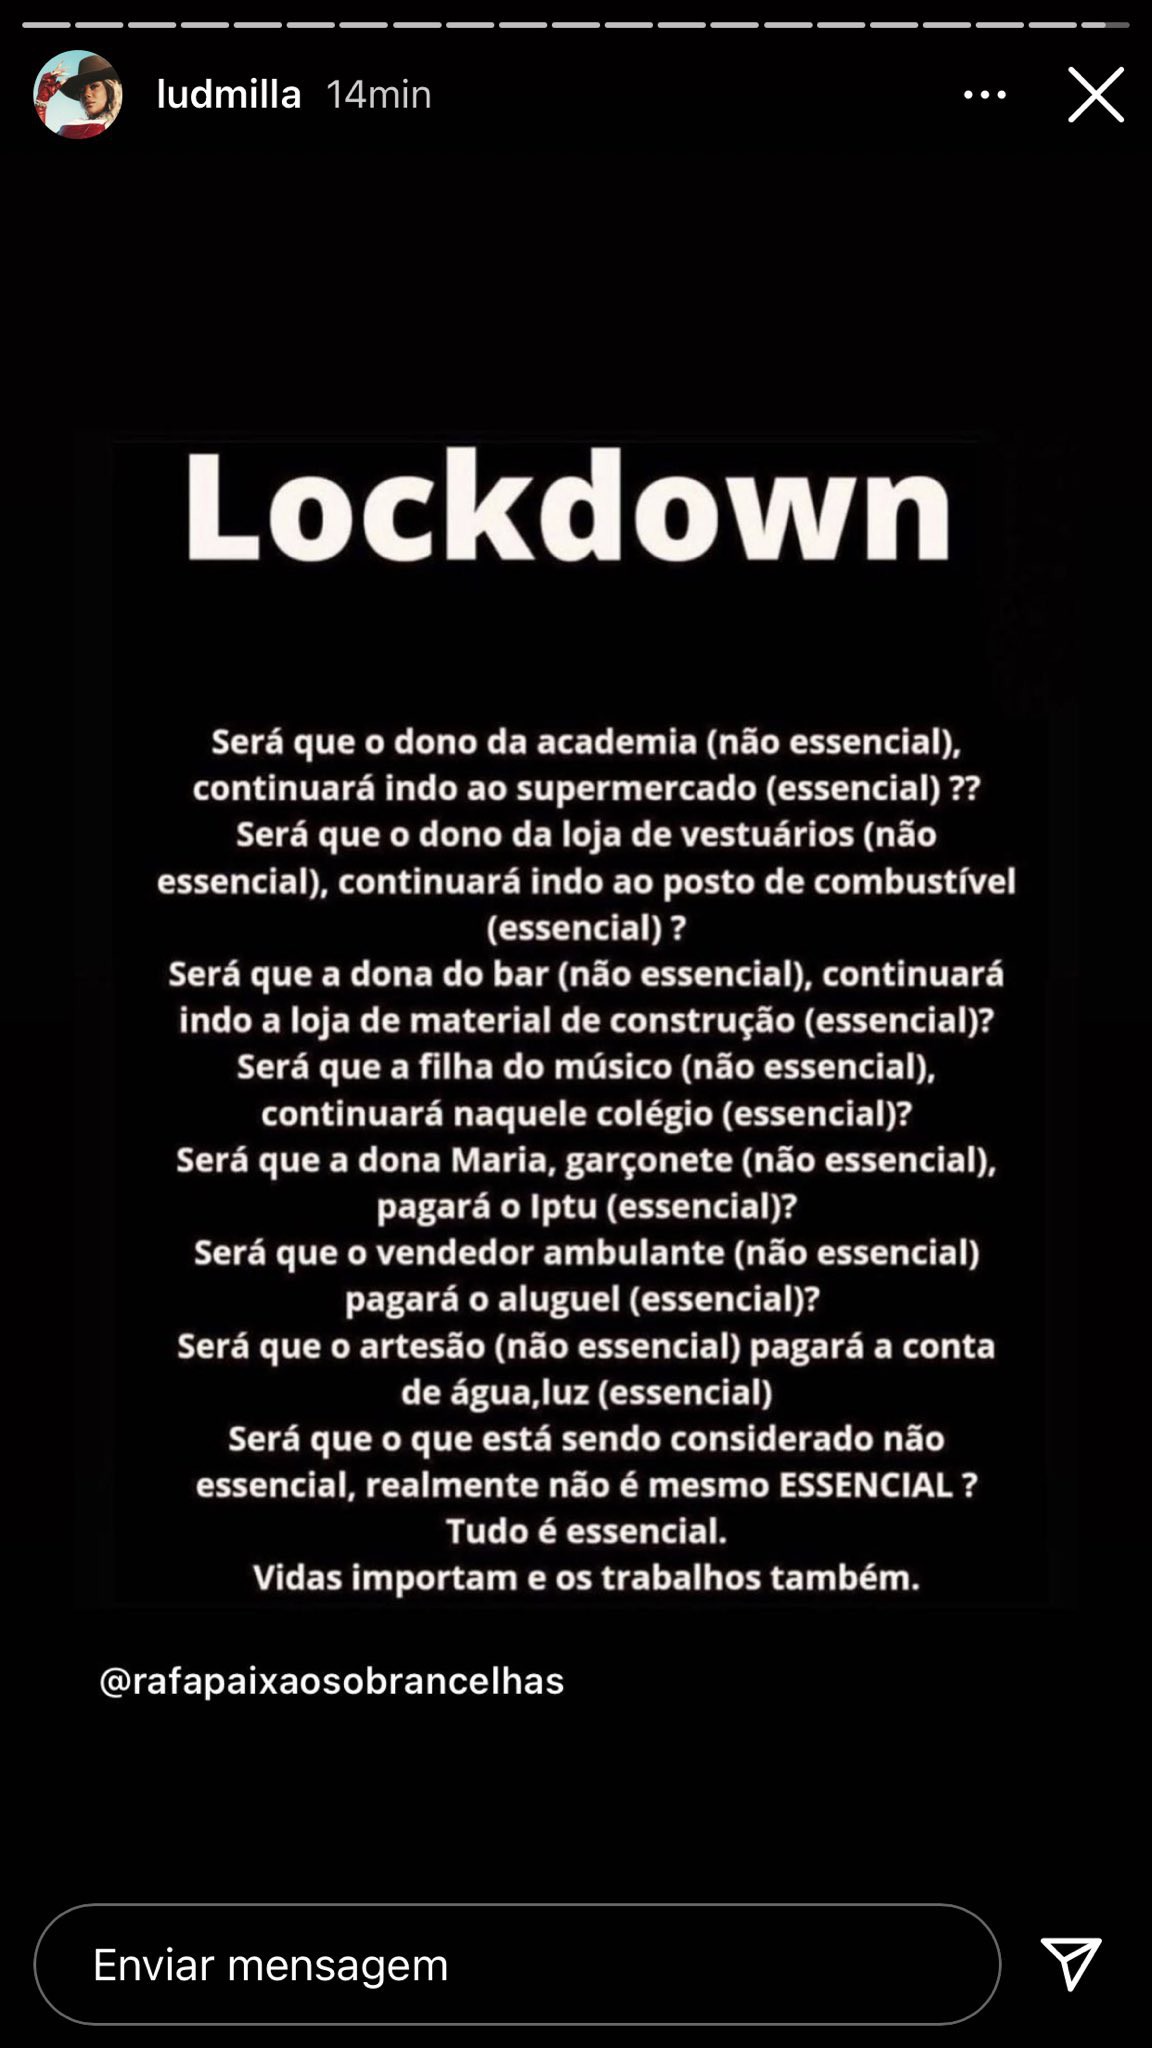 Ludmilla posta crítica ao lockdown e depois volta atrás e apaga  - Reprodução Instagram 